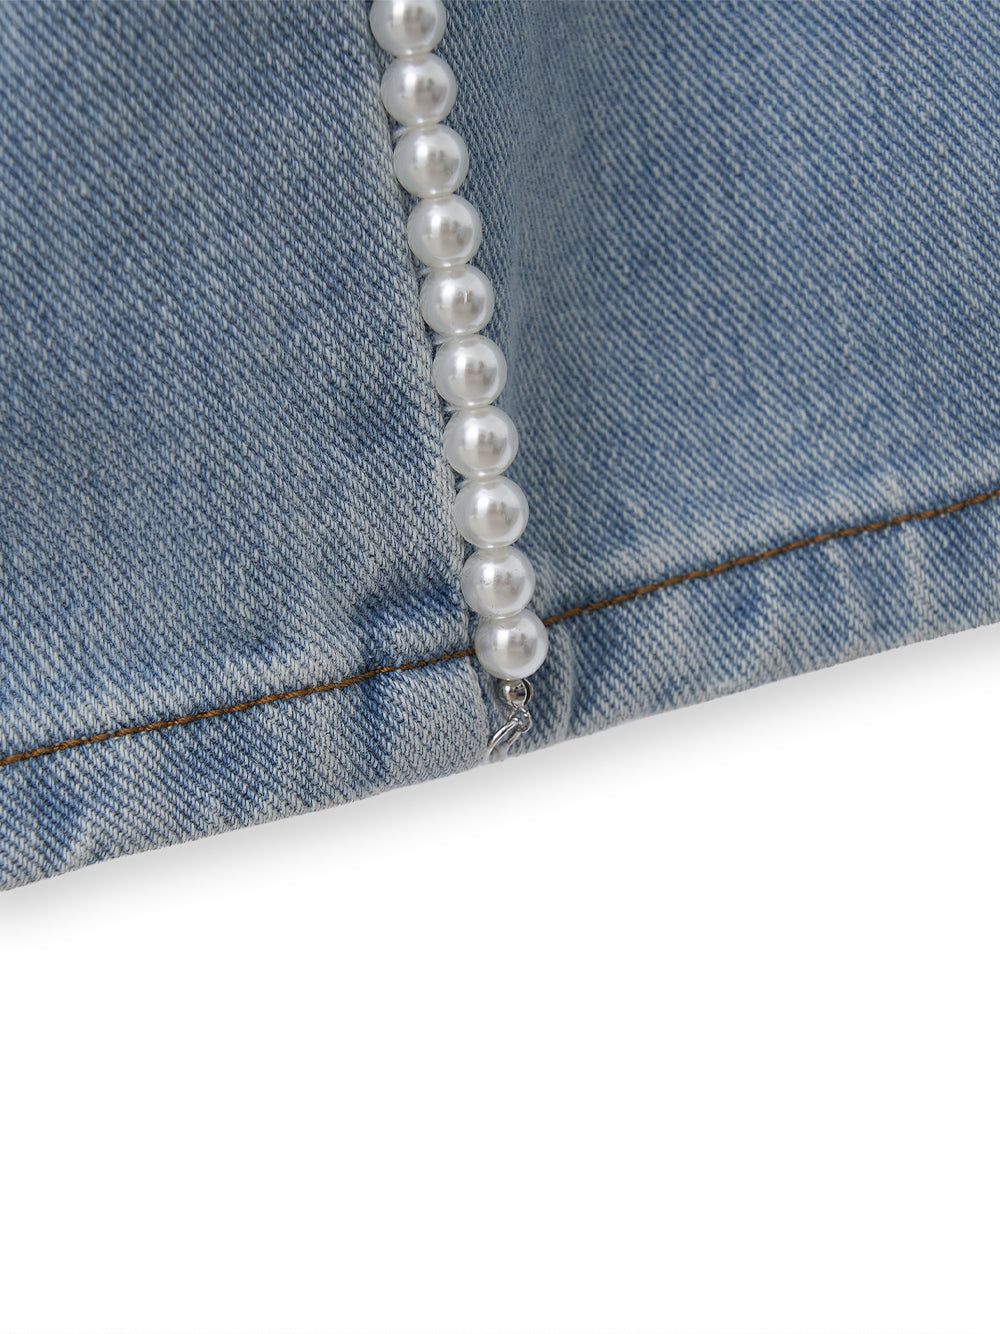 Pearl Embellished Jeans (Sky Blue)